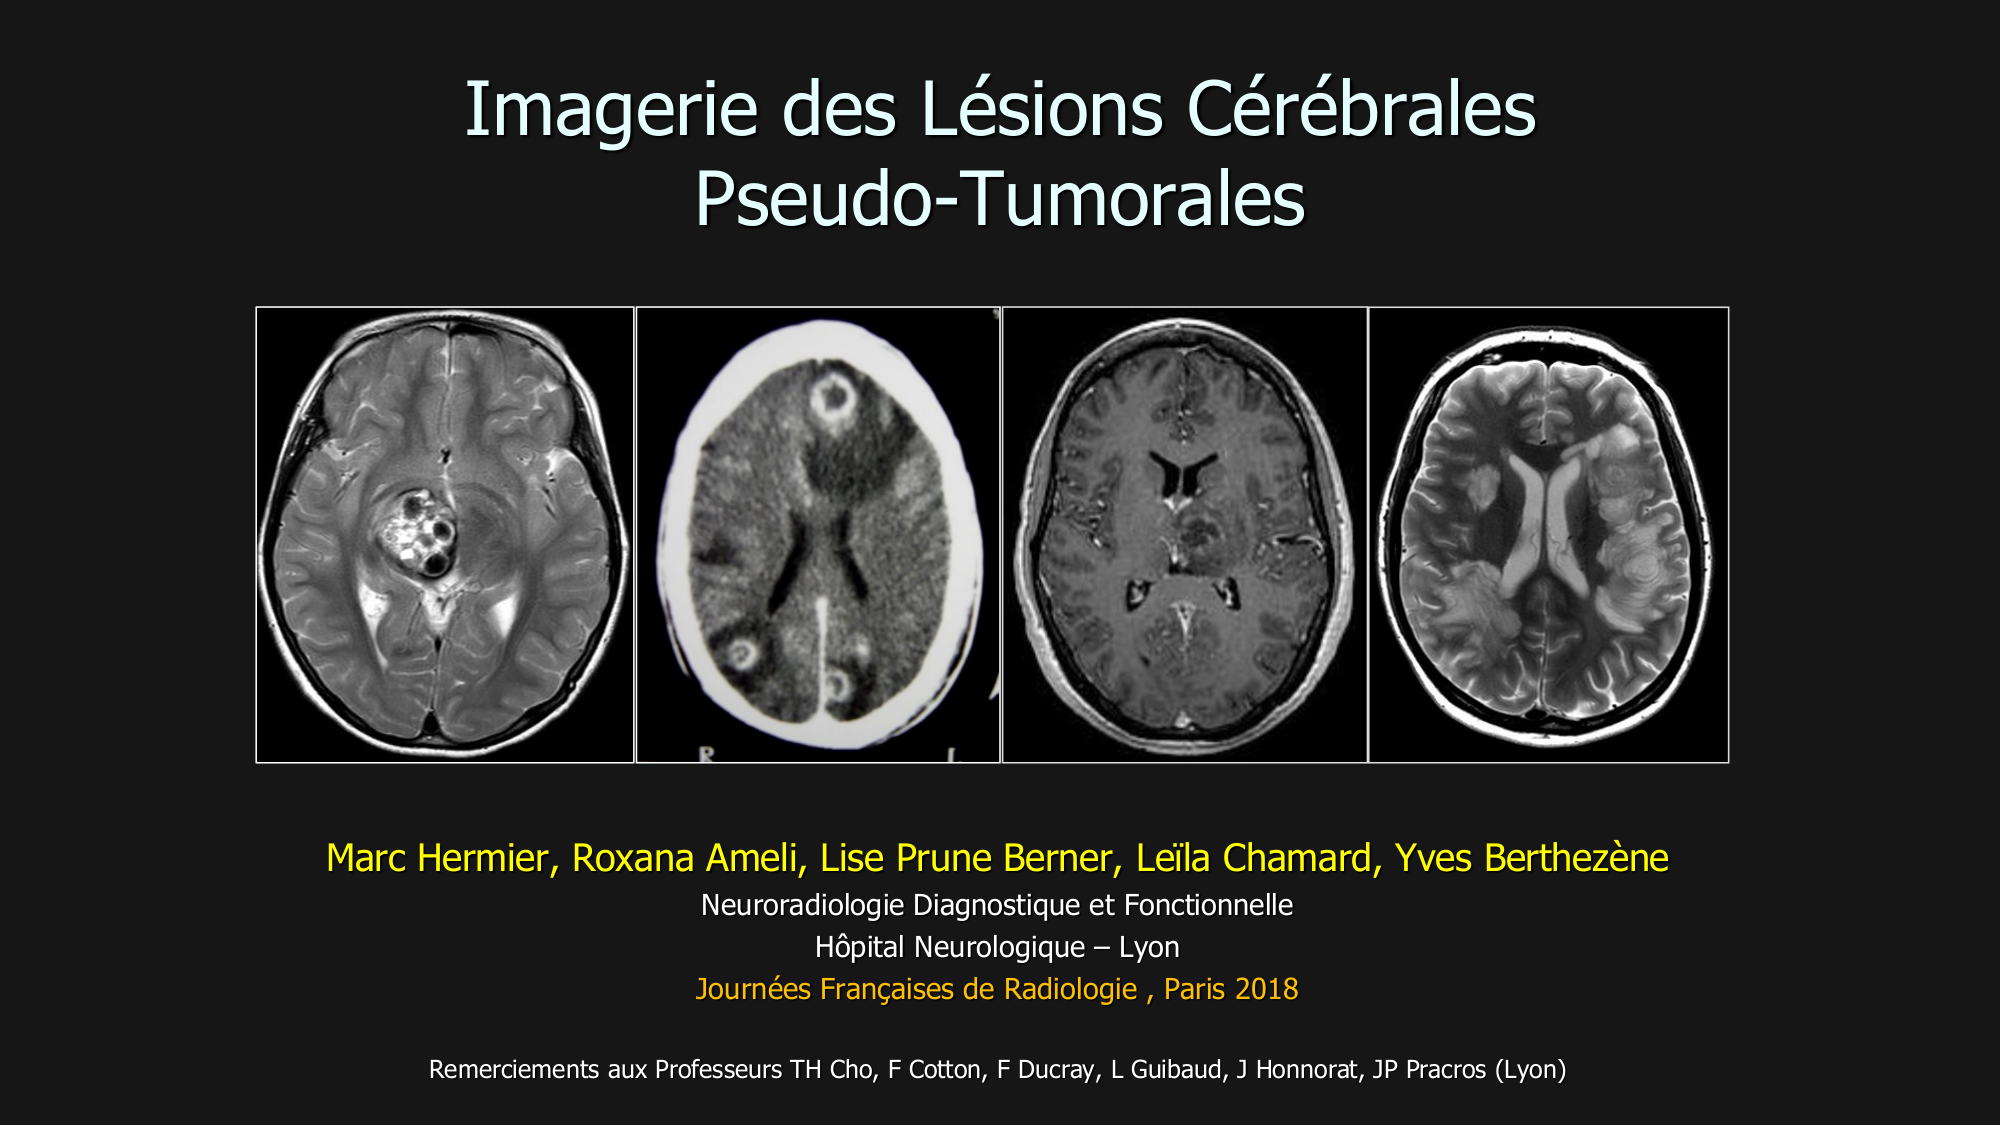 NR-WP-22 - Imagerie des lésions cérébrales pseudo-tumorales